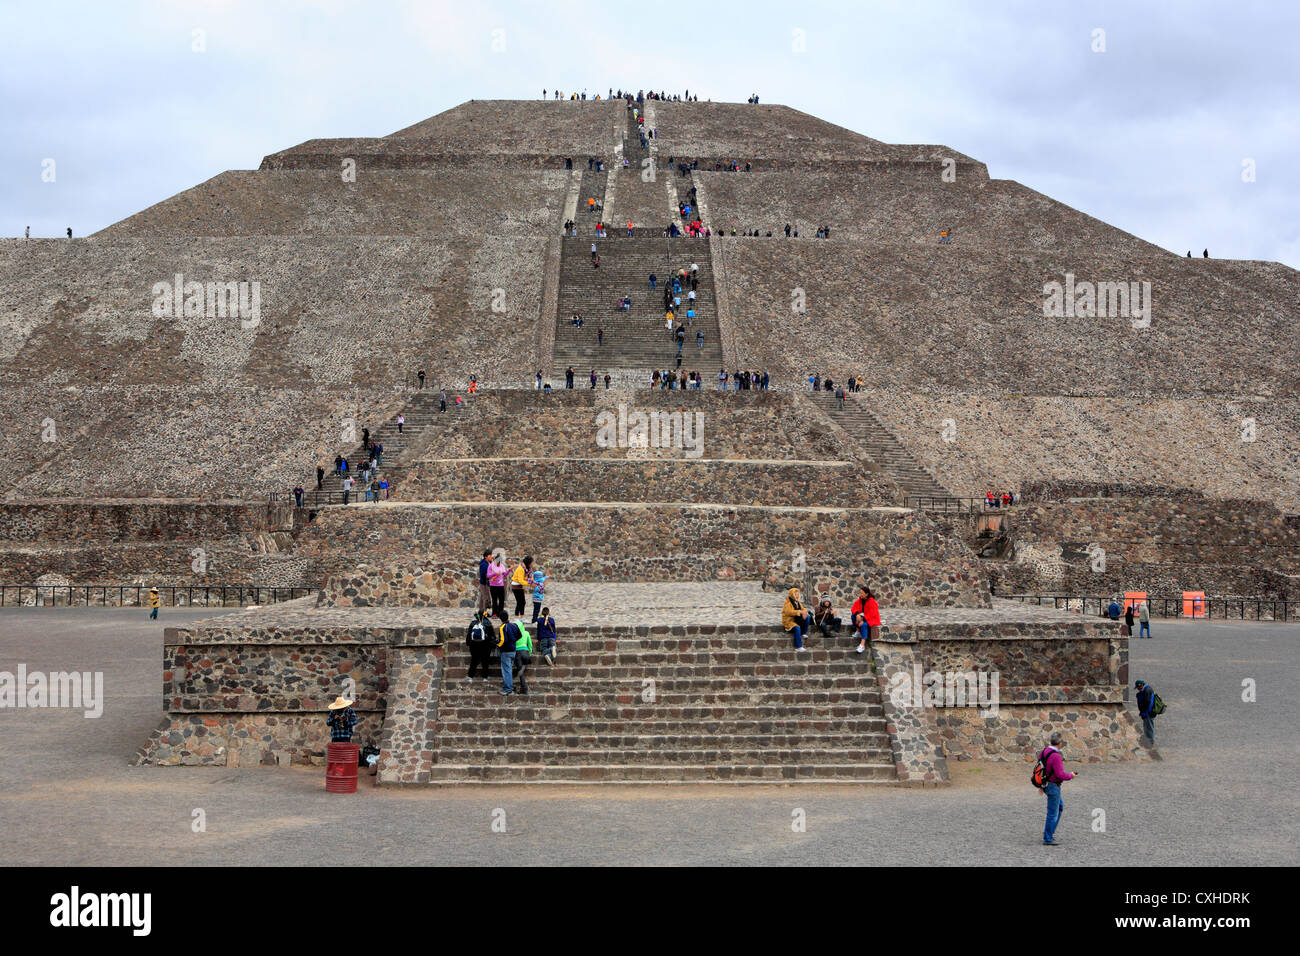 Pyramide du soleil, Teotihuacan, près de Mexico, Mexique Banque D'Images